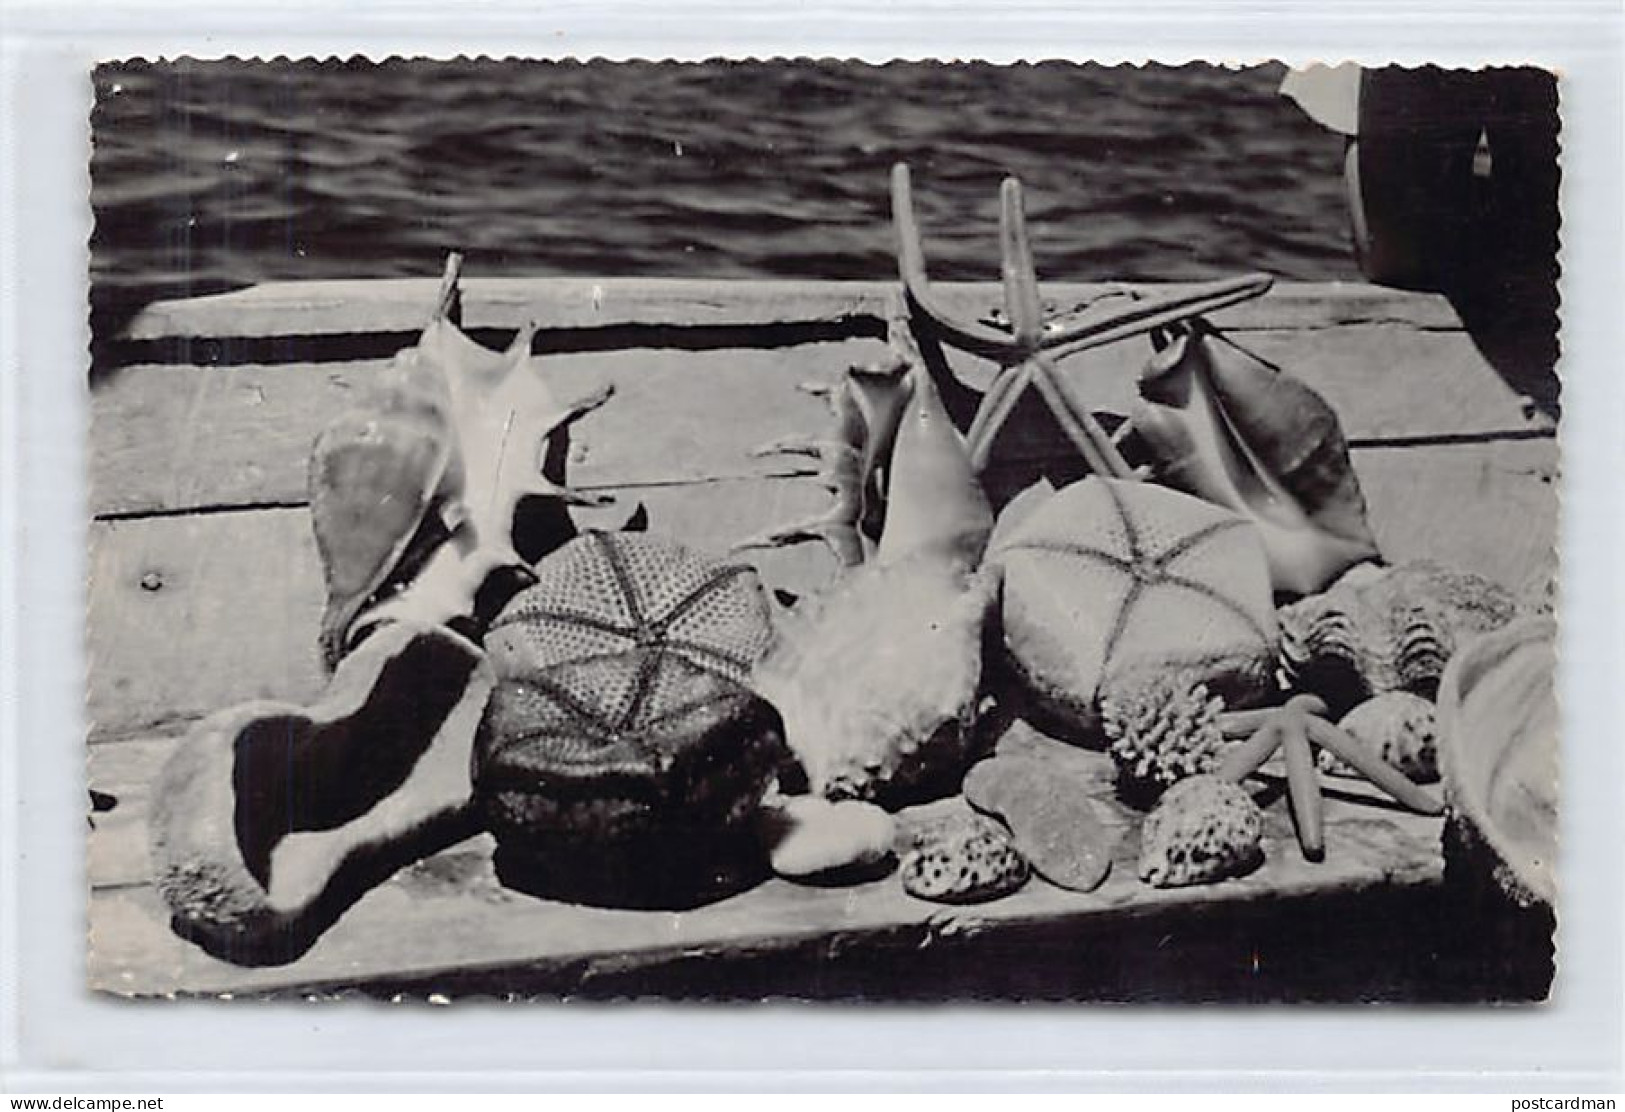 MAYOTTE - Collection De Coquillages à Dzaoudzi - CARTE PHOTO Année 1958 - Ed. Inconnu  - Mayotte